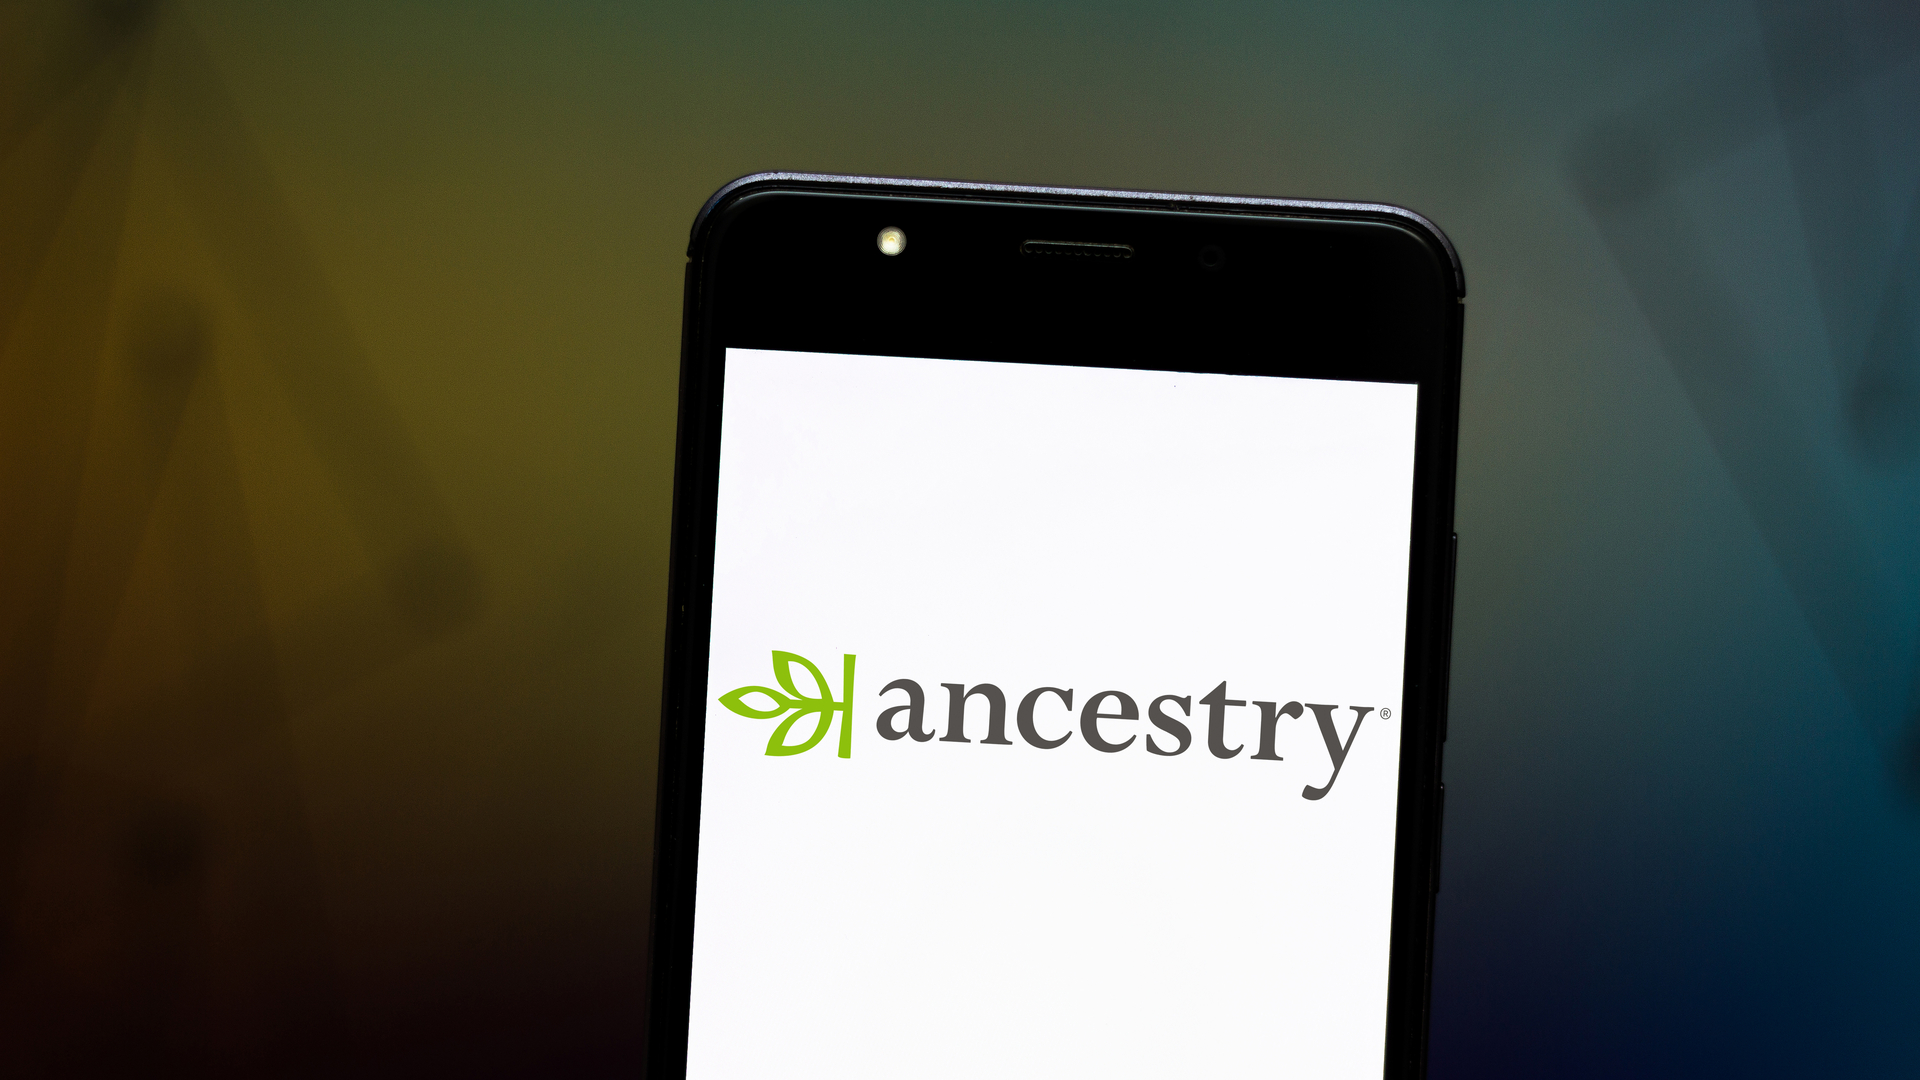 Using Ancestry.com